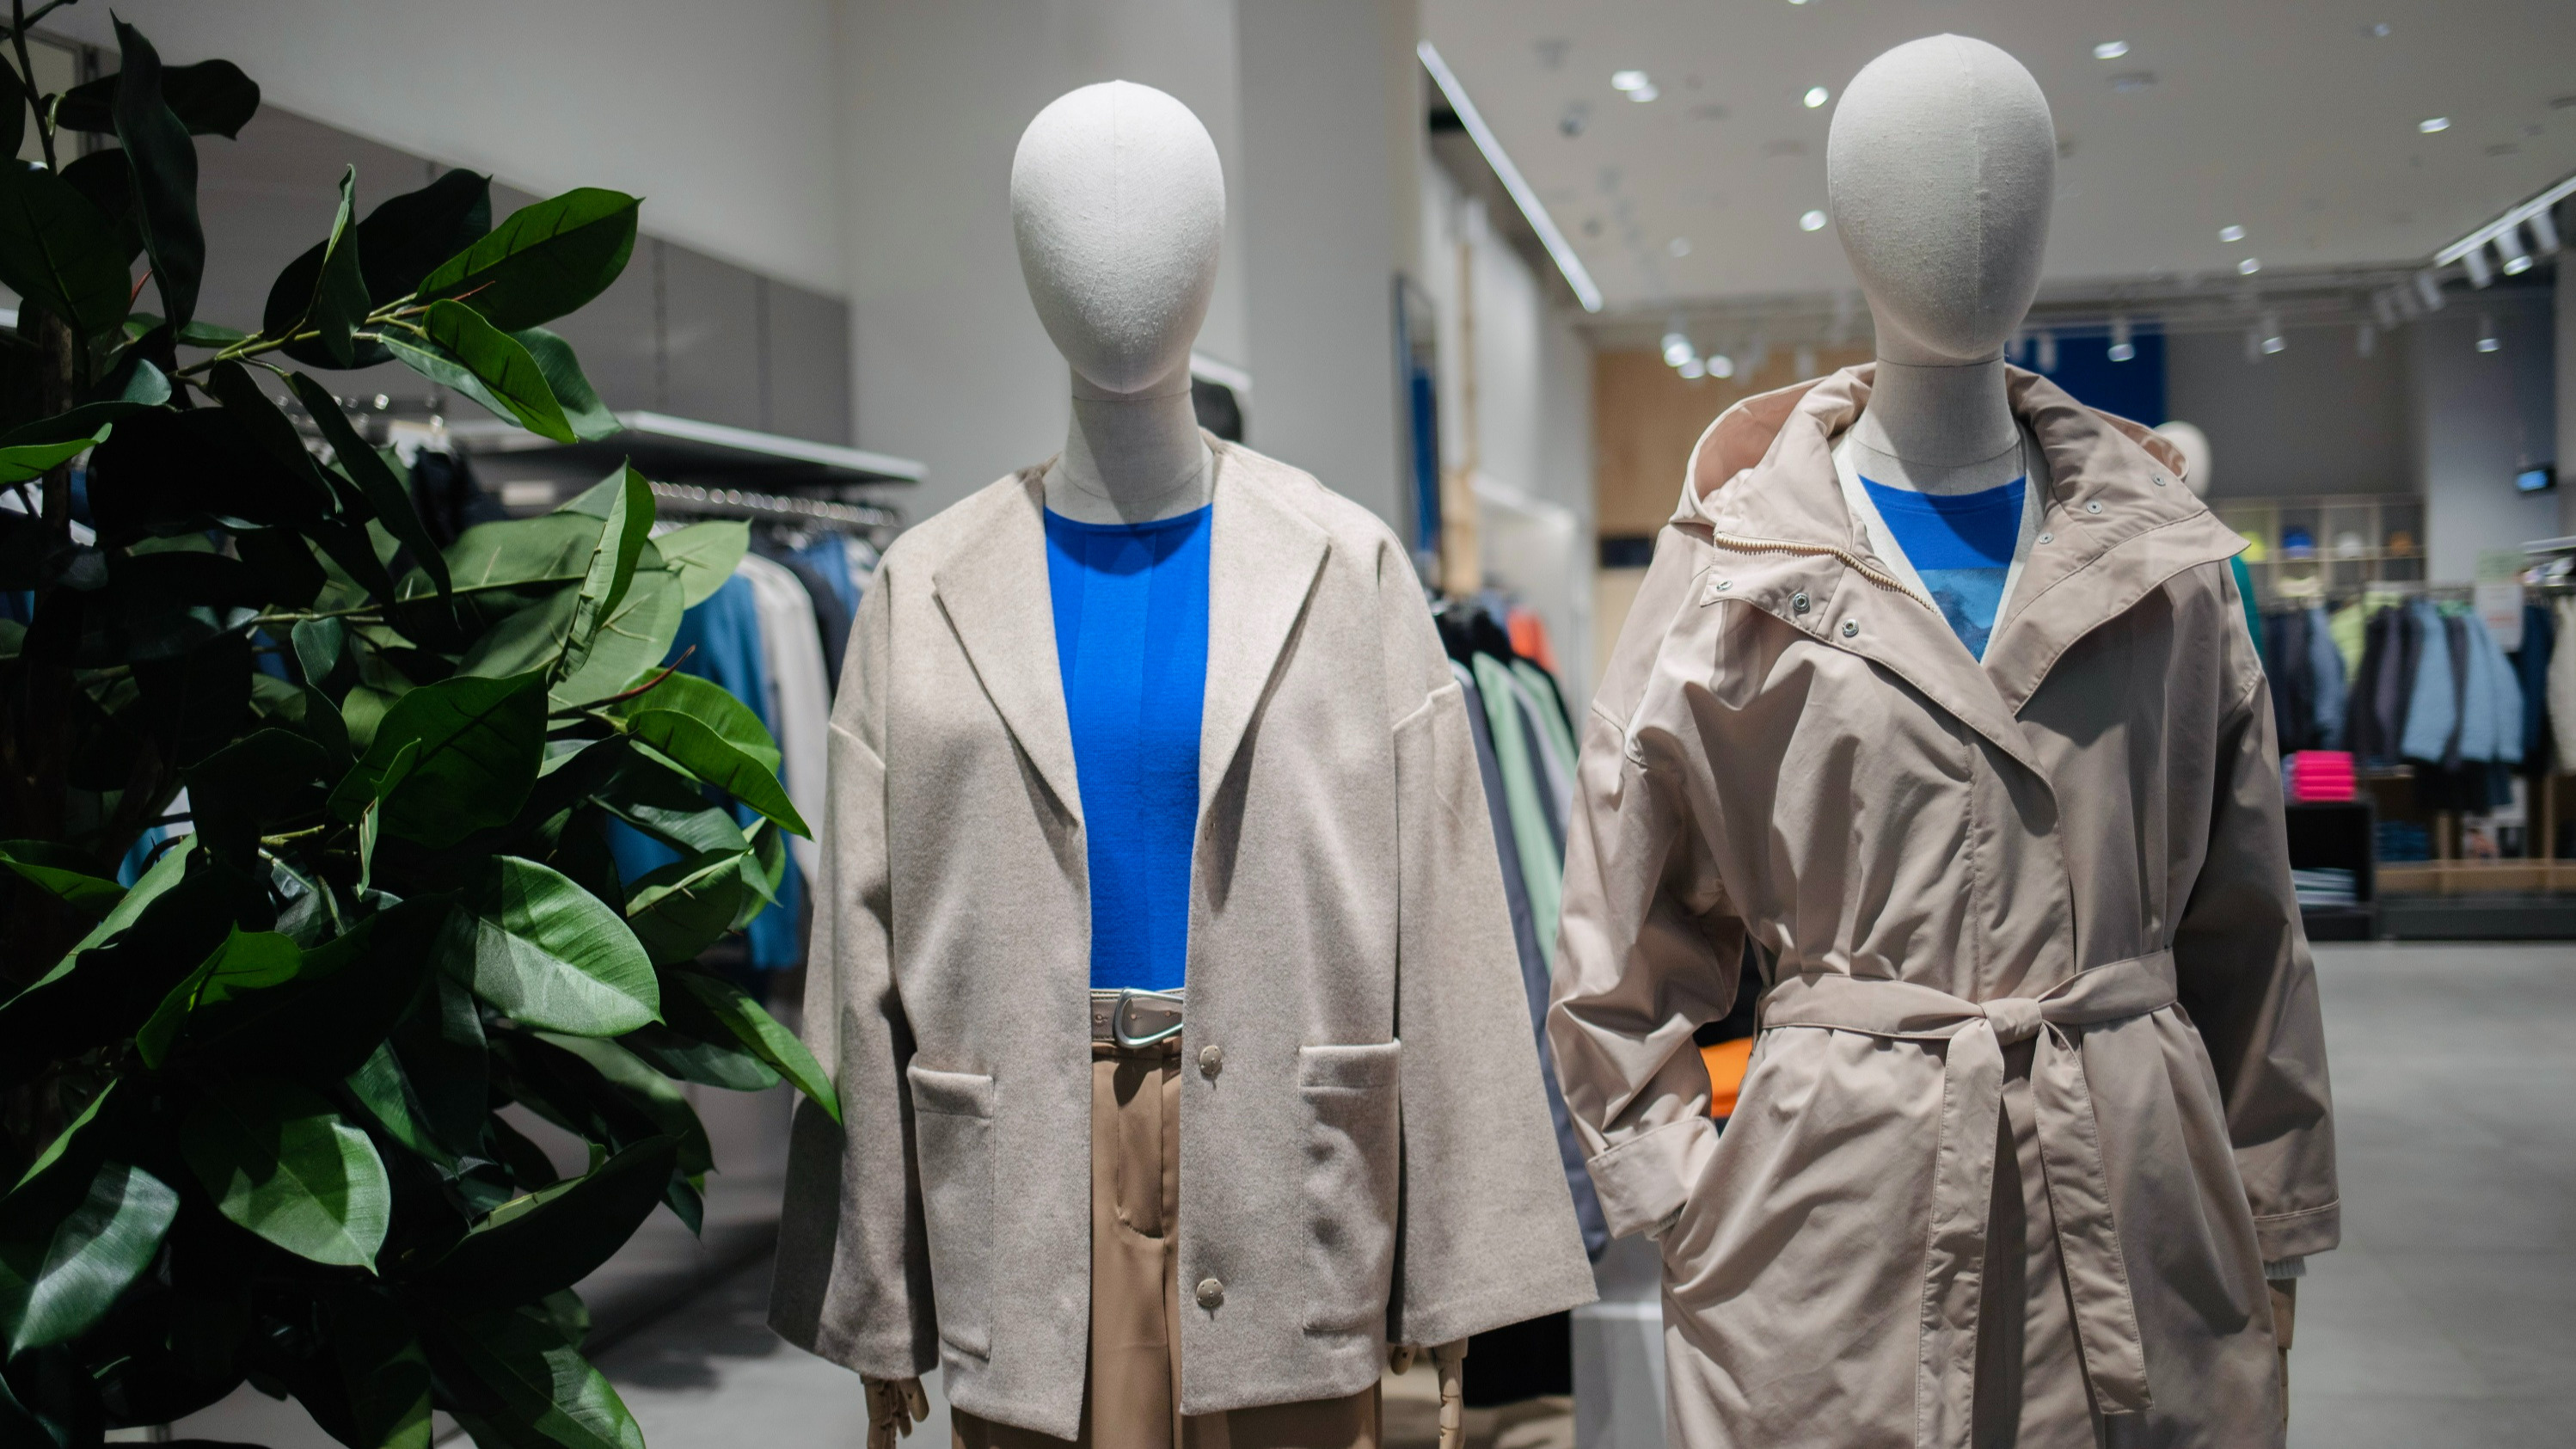 Куртка фермера или базовое пальто: ищем в торговом центре модную одежду на весну — обзор с ценами от масс-маркета до мидл